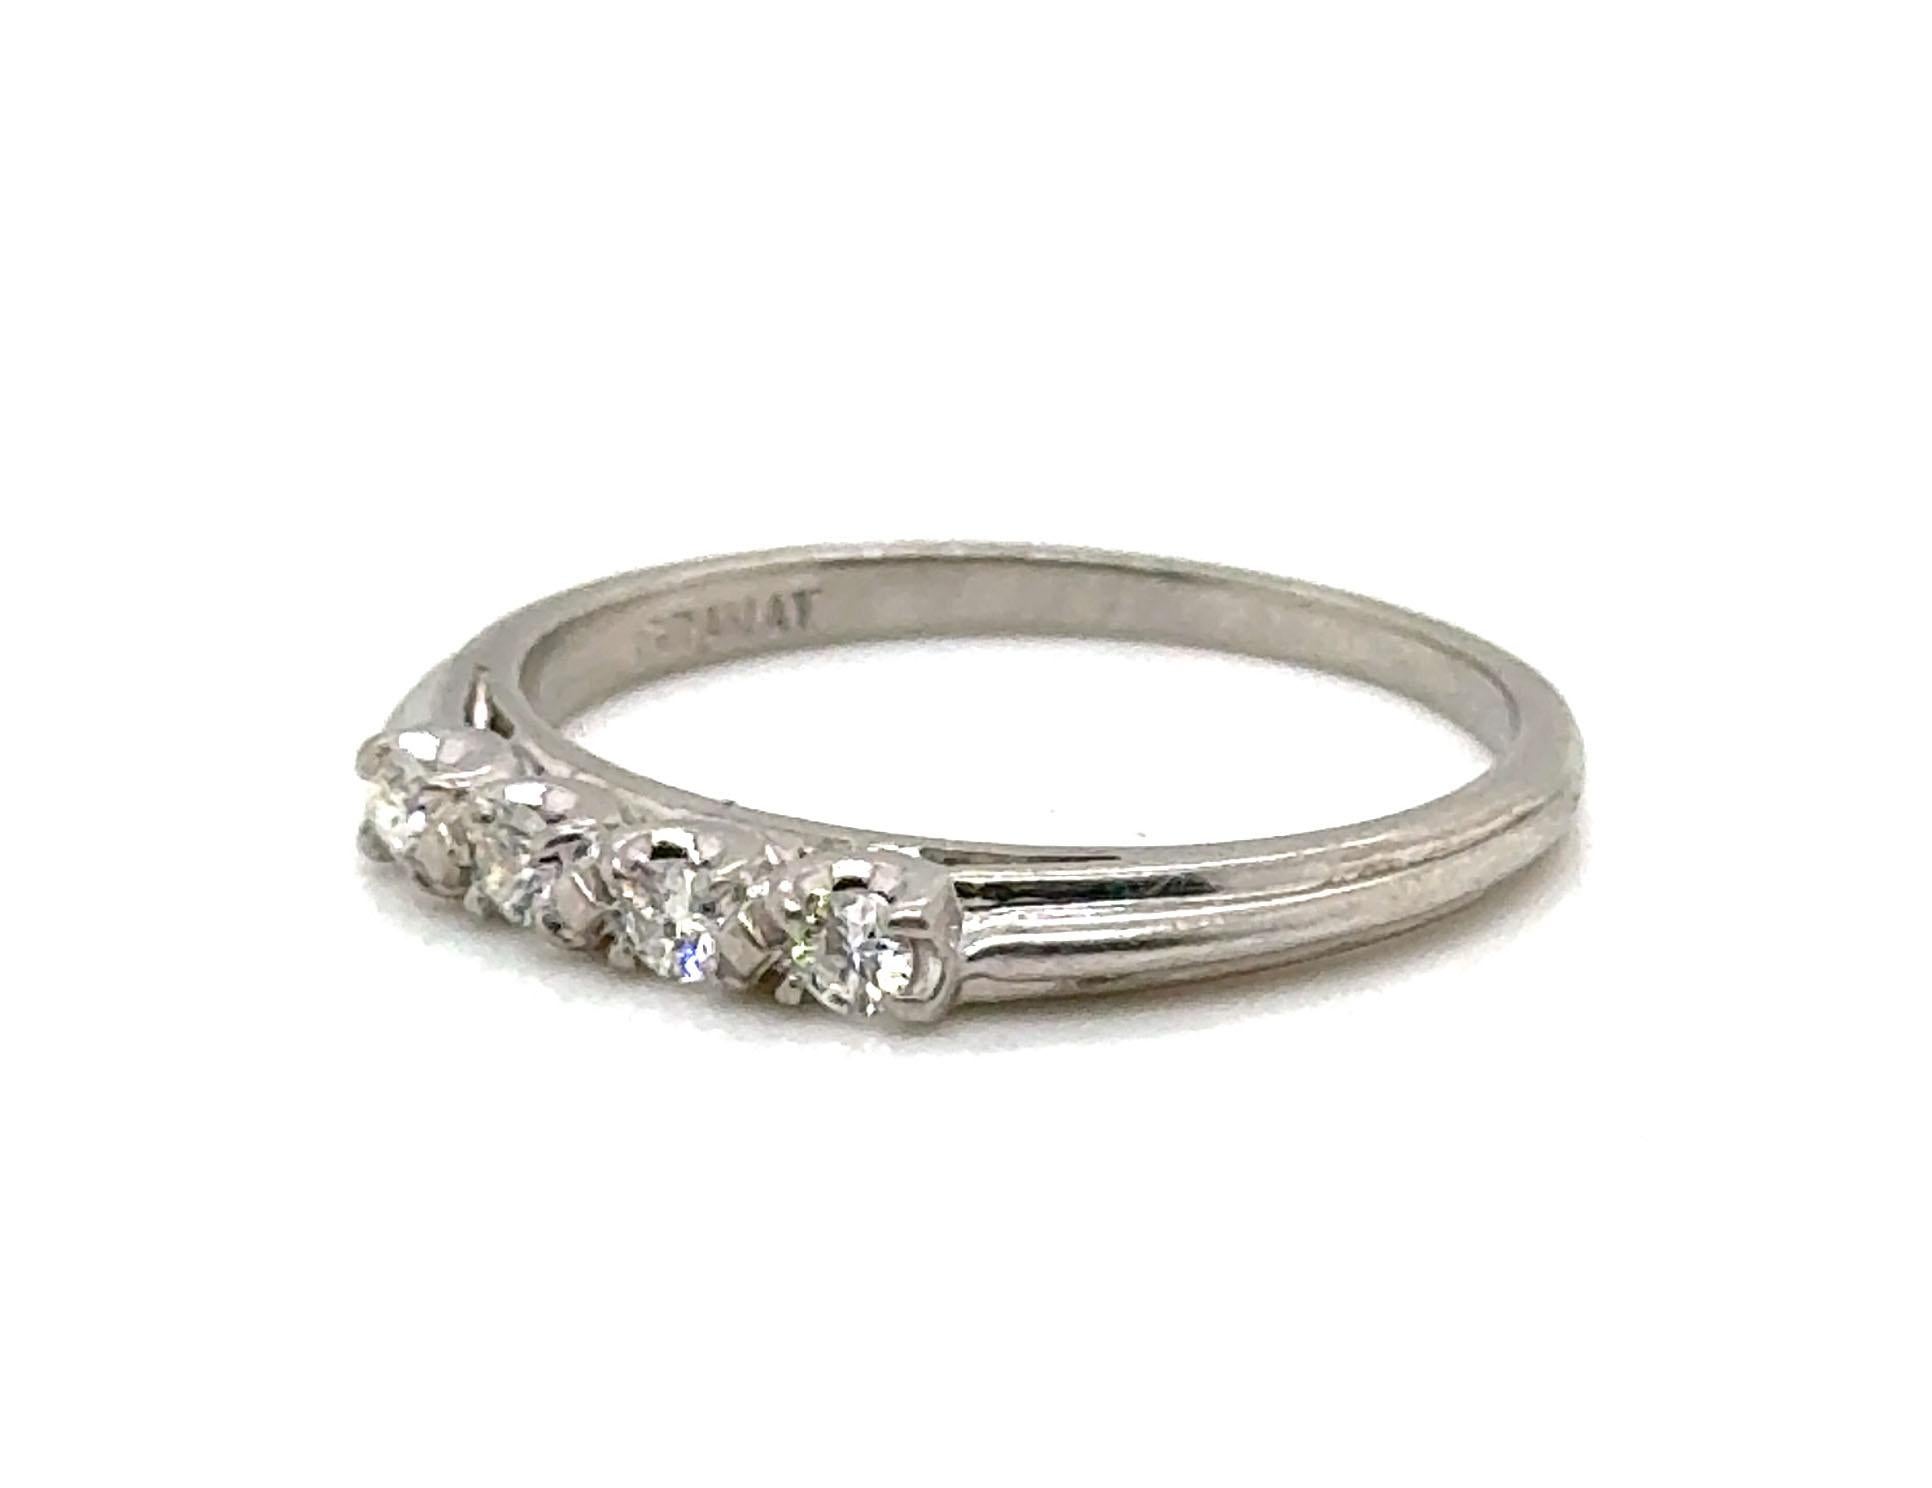 Echtes Original Antik Art Deco aus den 1930er-1940er Jahren Granat Bros Anniversary Band Diamond Platinum Wedding Ring 



Merkmale 4 zusammenpassende saubere und farblose natürliche Diamanten im Brillantschliff

Markenzeichen von Granat Bros.

90%